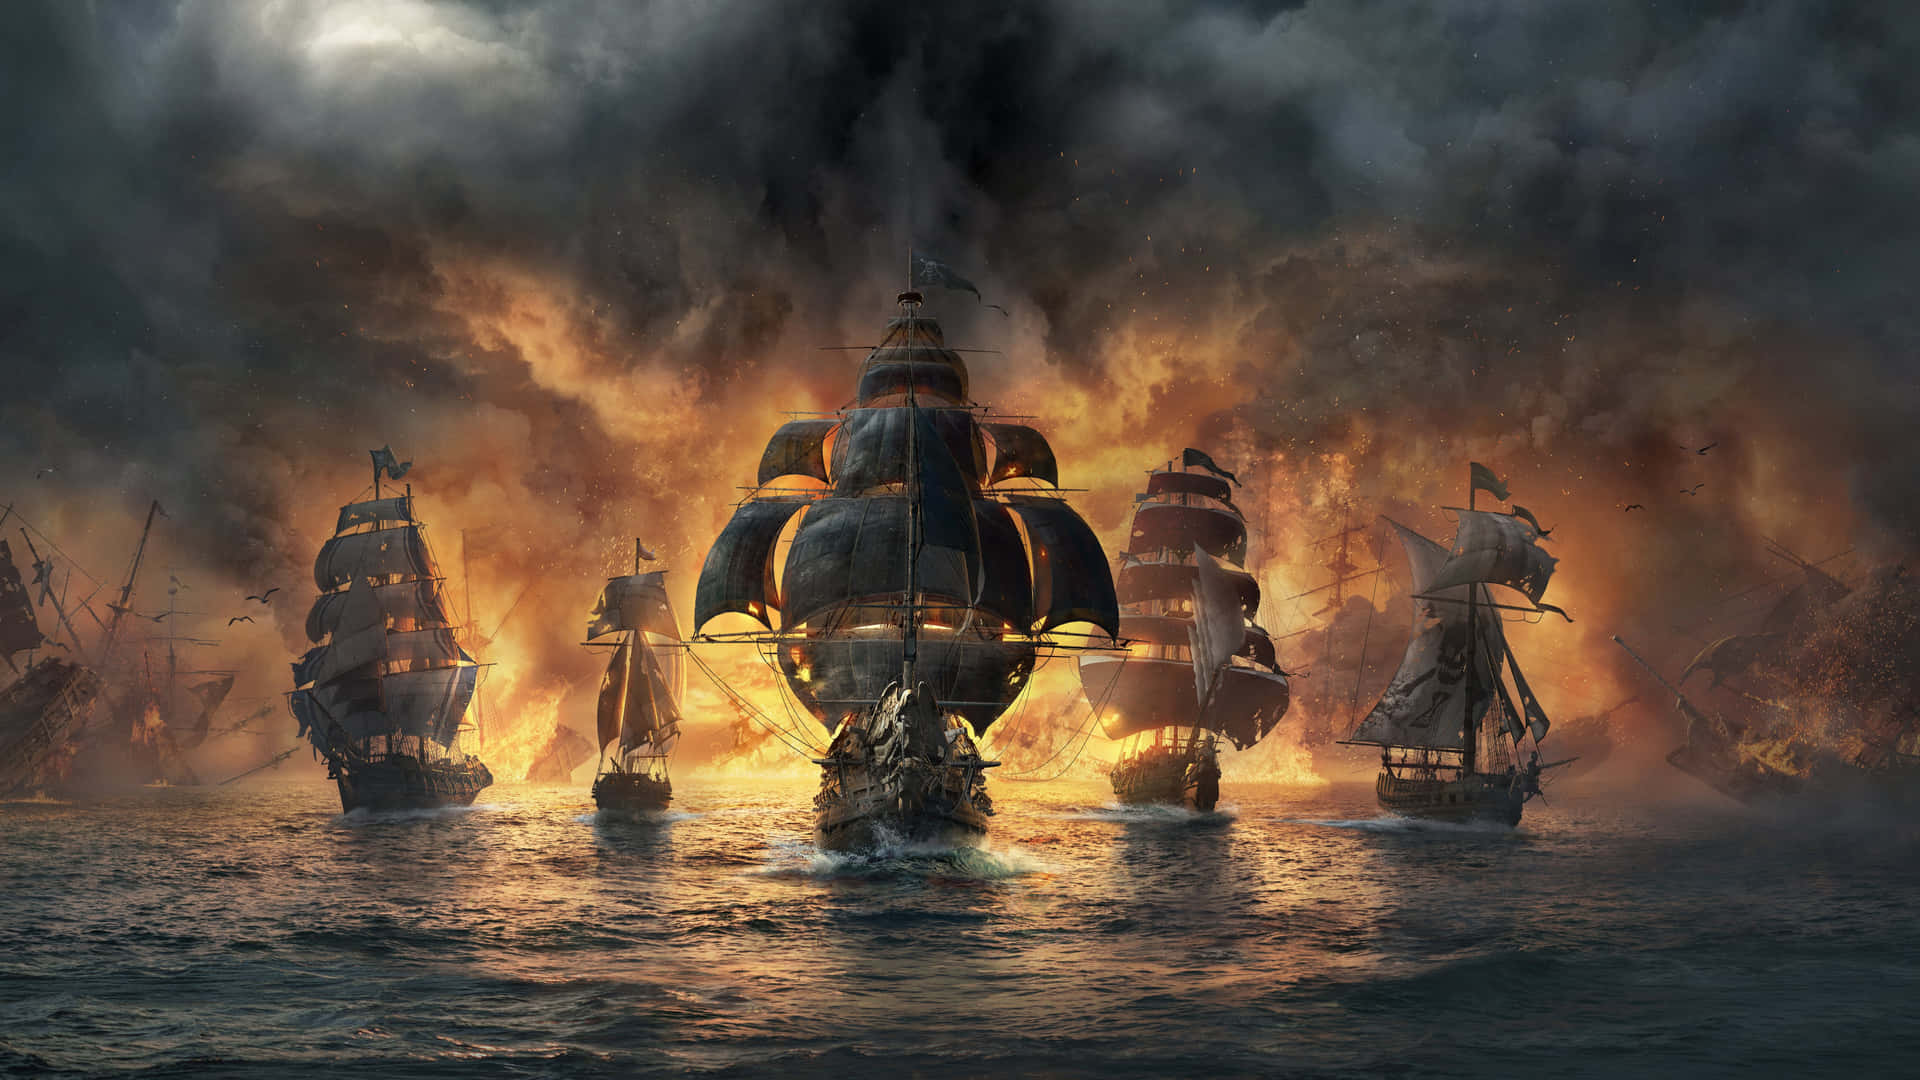 Navigandoverso L'ignoto: Una Nave Pirata Al Tramonto